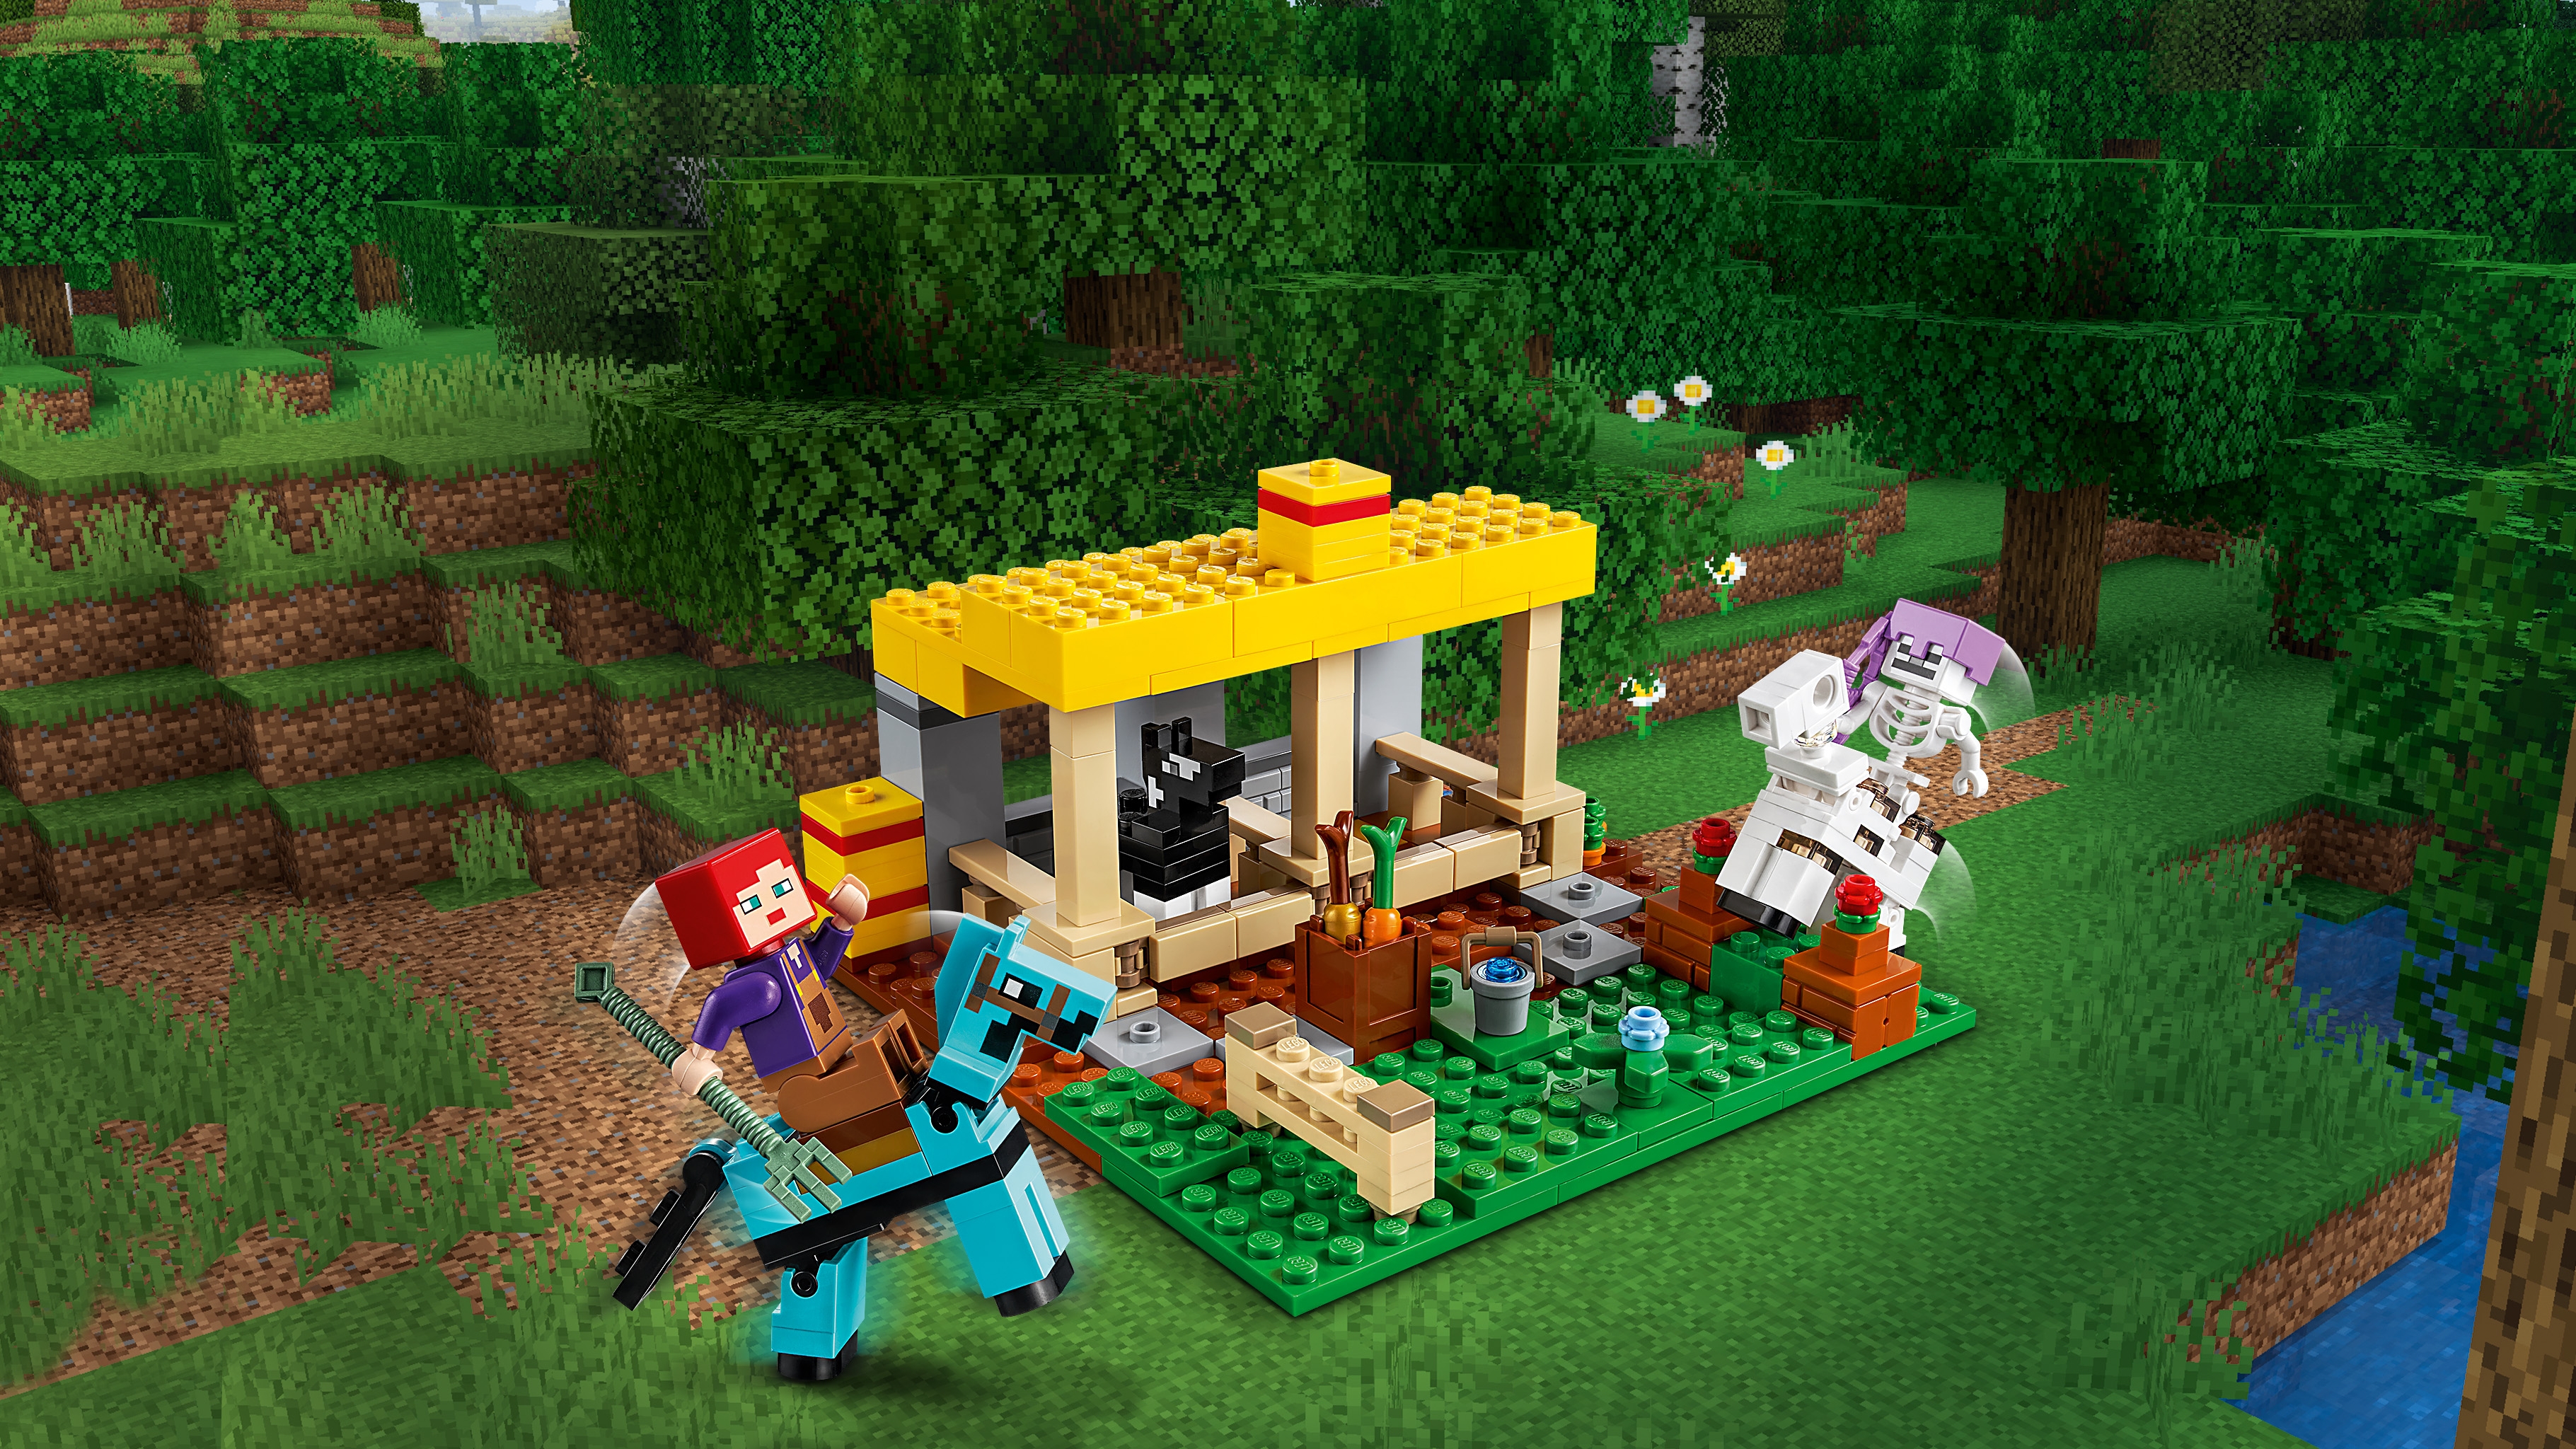 馬小屋 21171 - レゴ®マインクラフト セット - LEGO.comキッズ